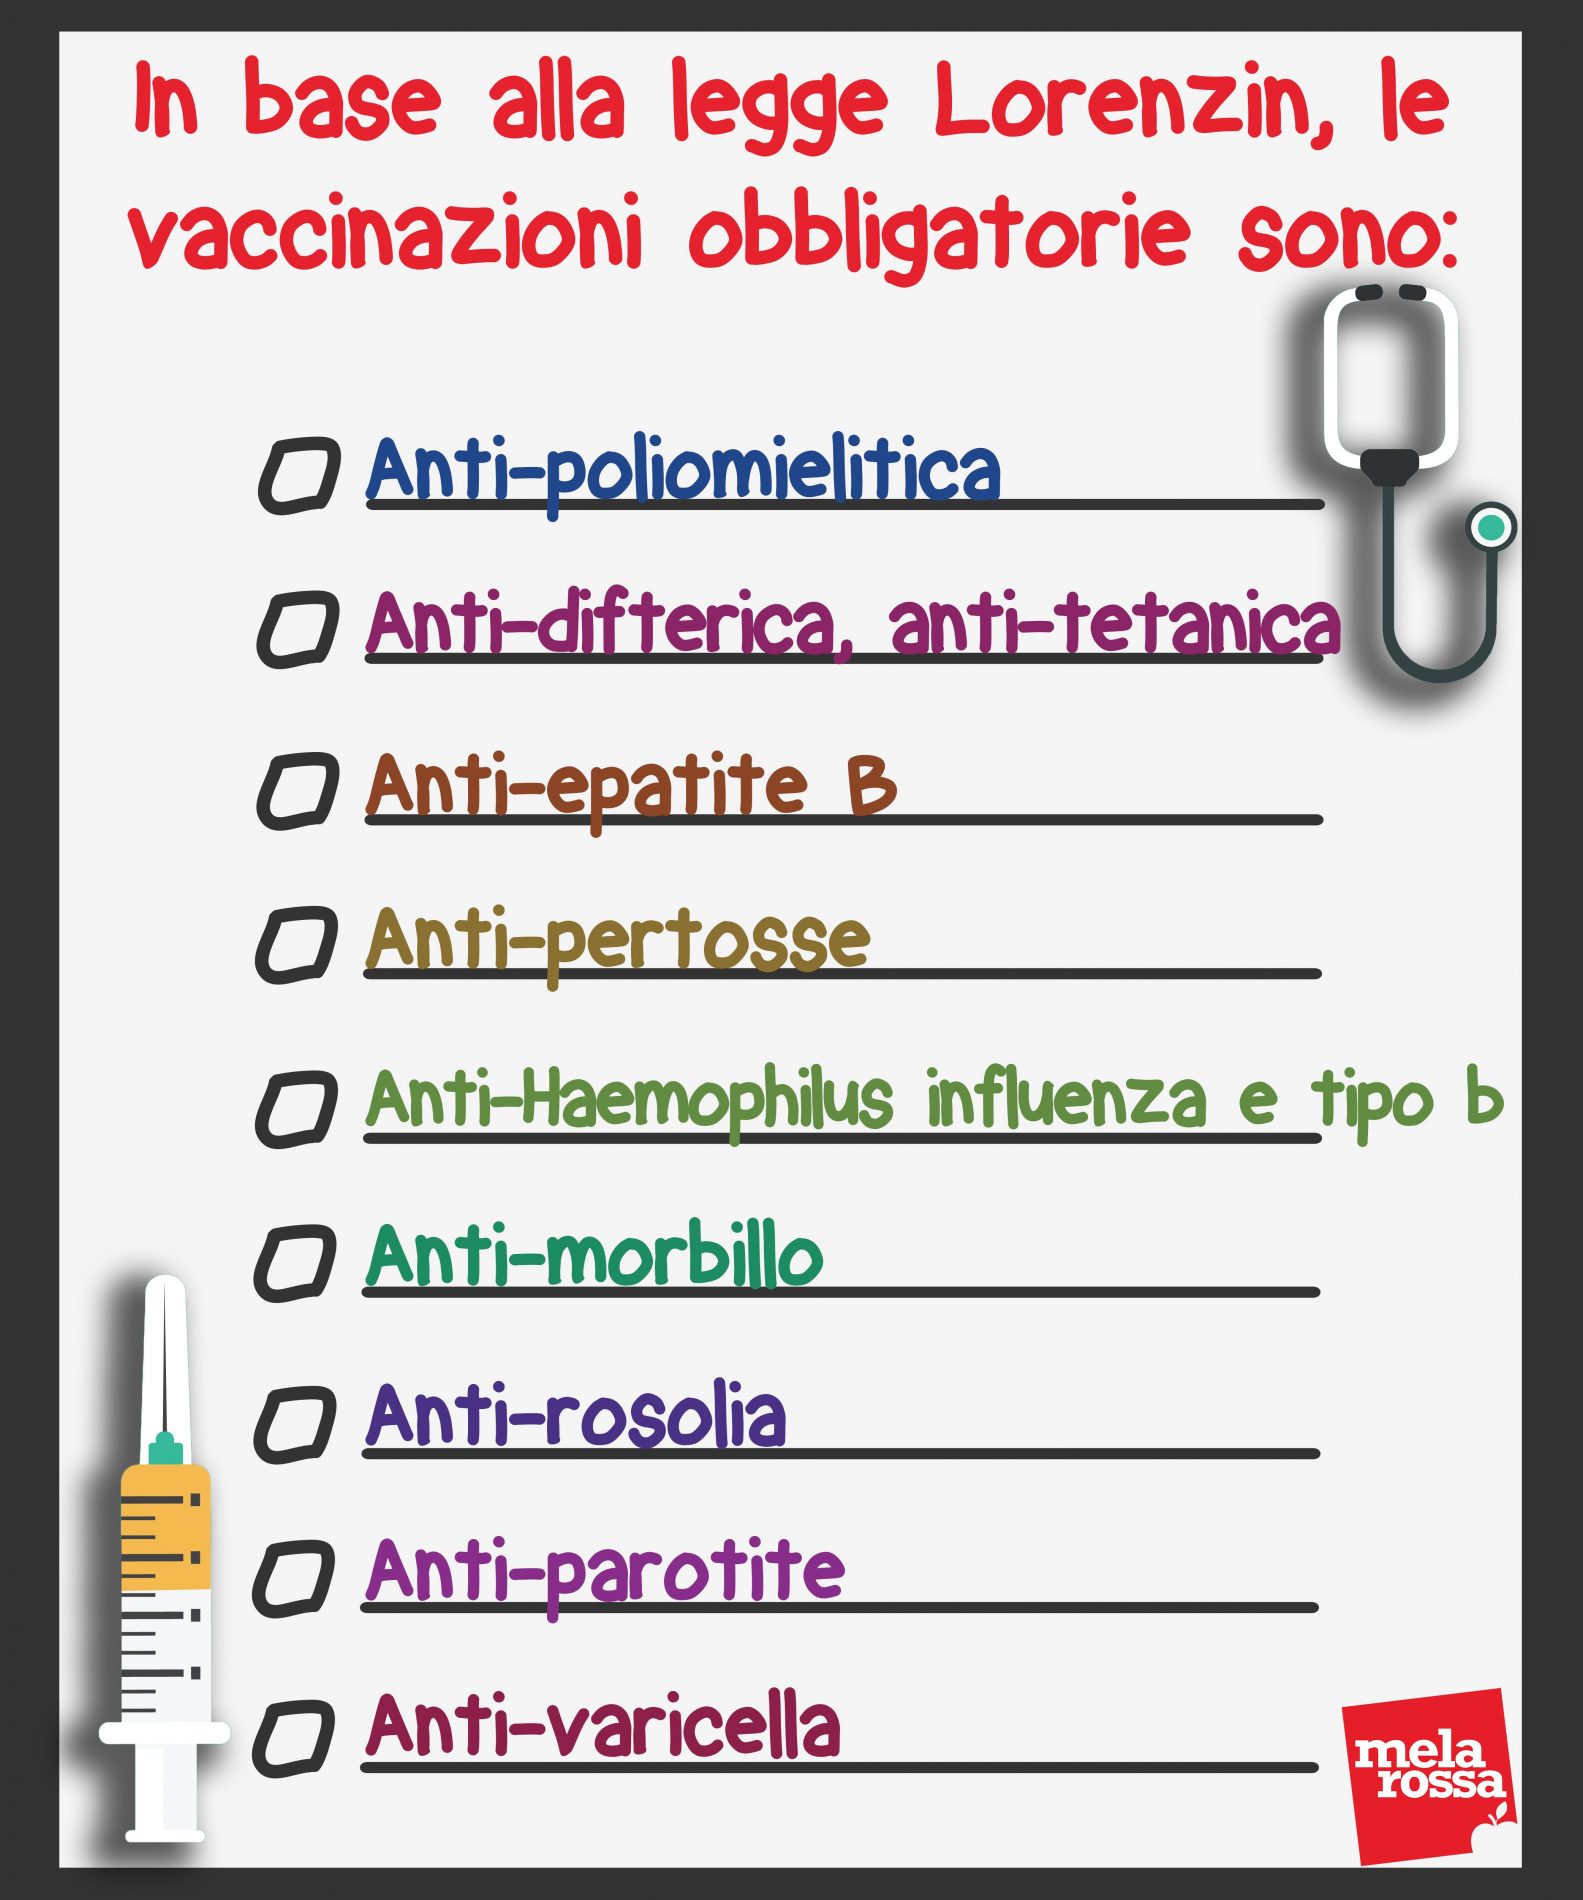 vaccini-obbligatori-2017-2018